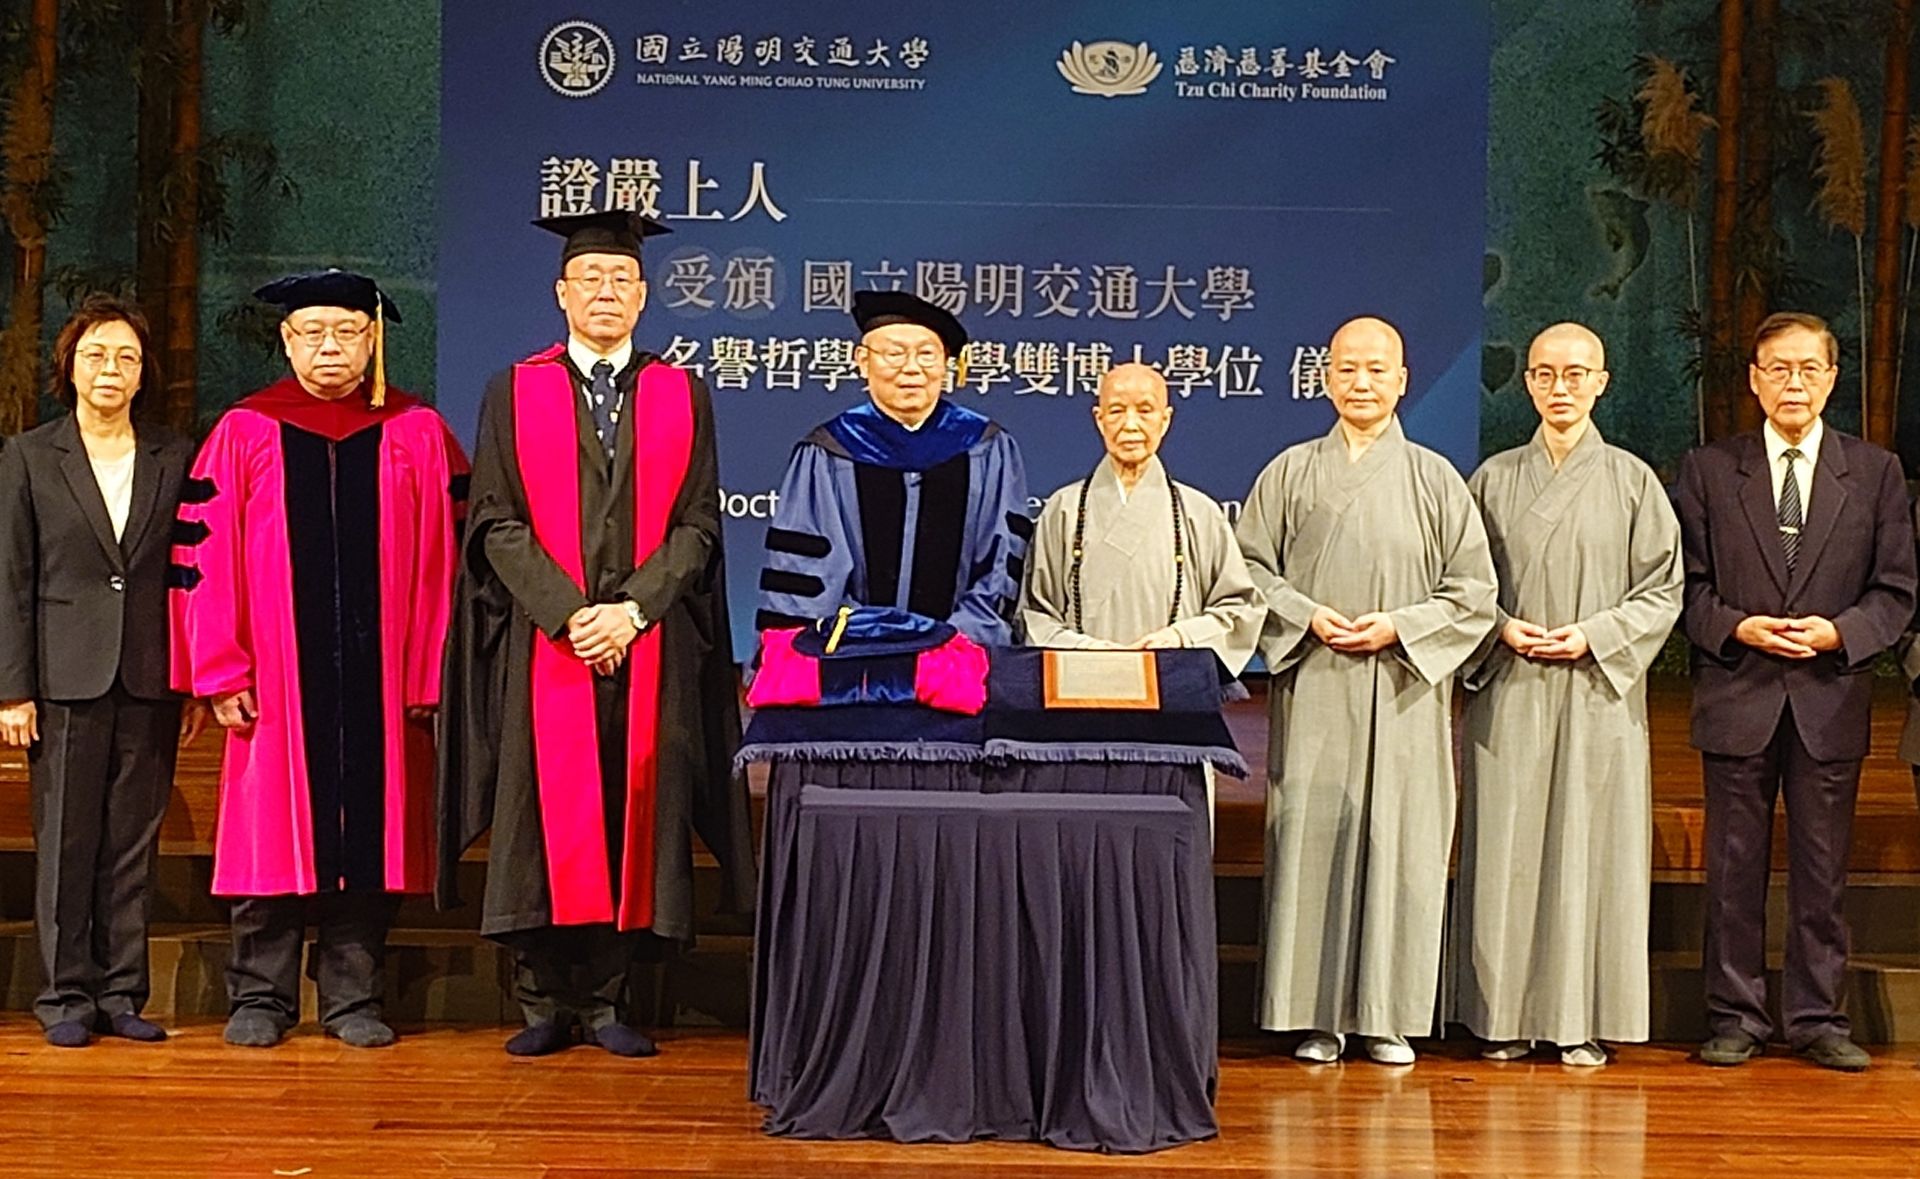 國立陽明交通大學5月12日由林奇宏校長頒贈名譽哲學暨醫學雙博士學位給慈濟證嚴法師。